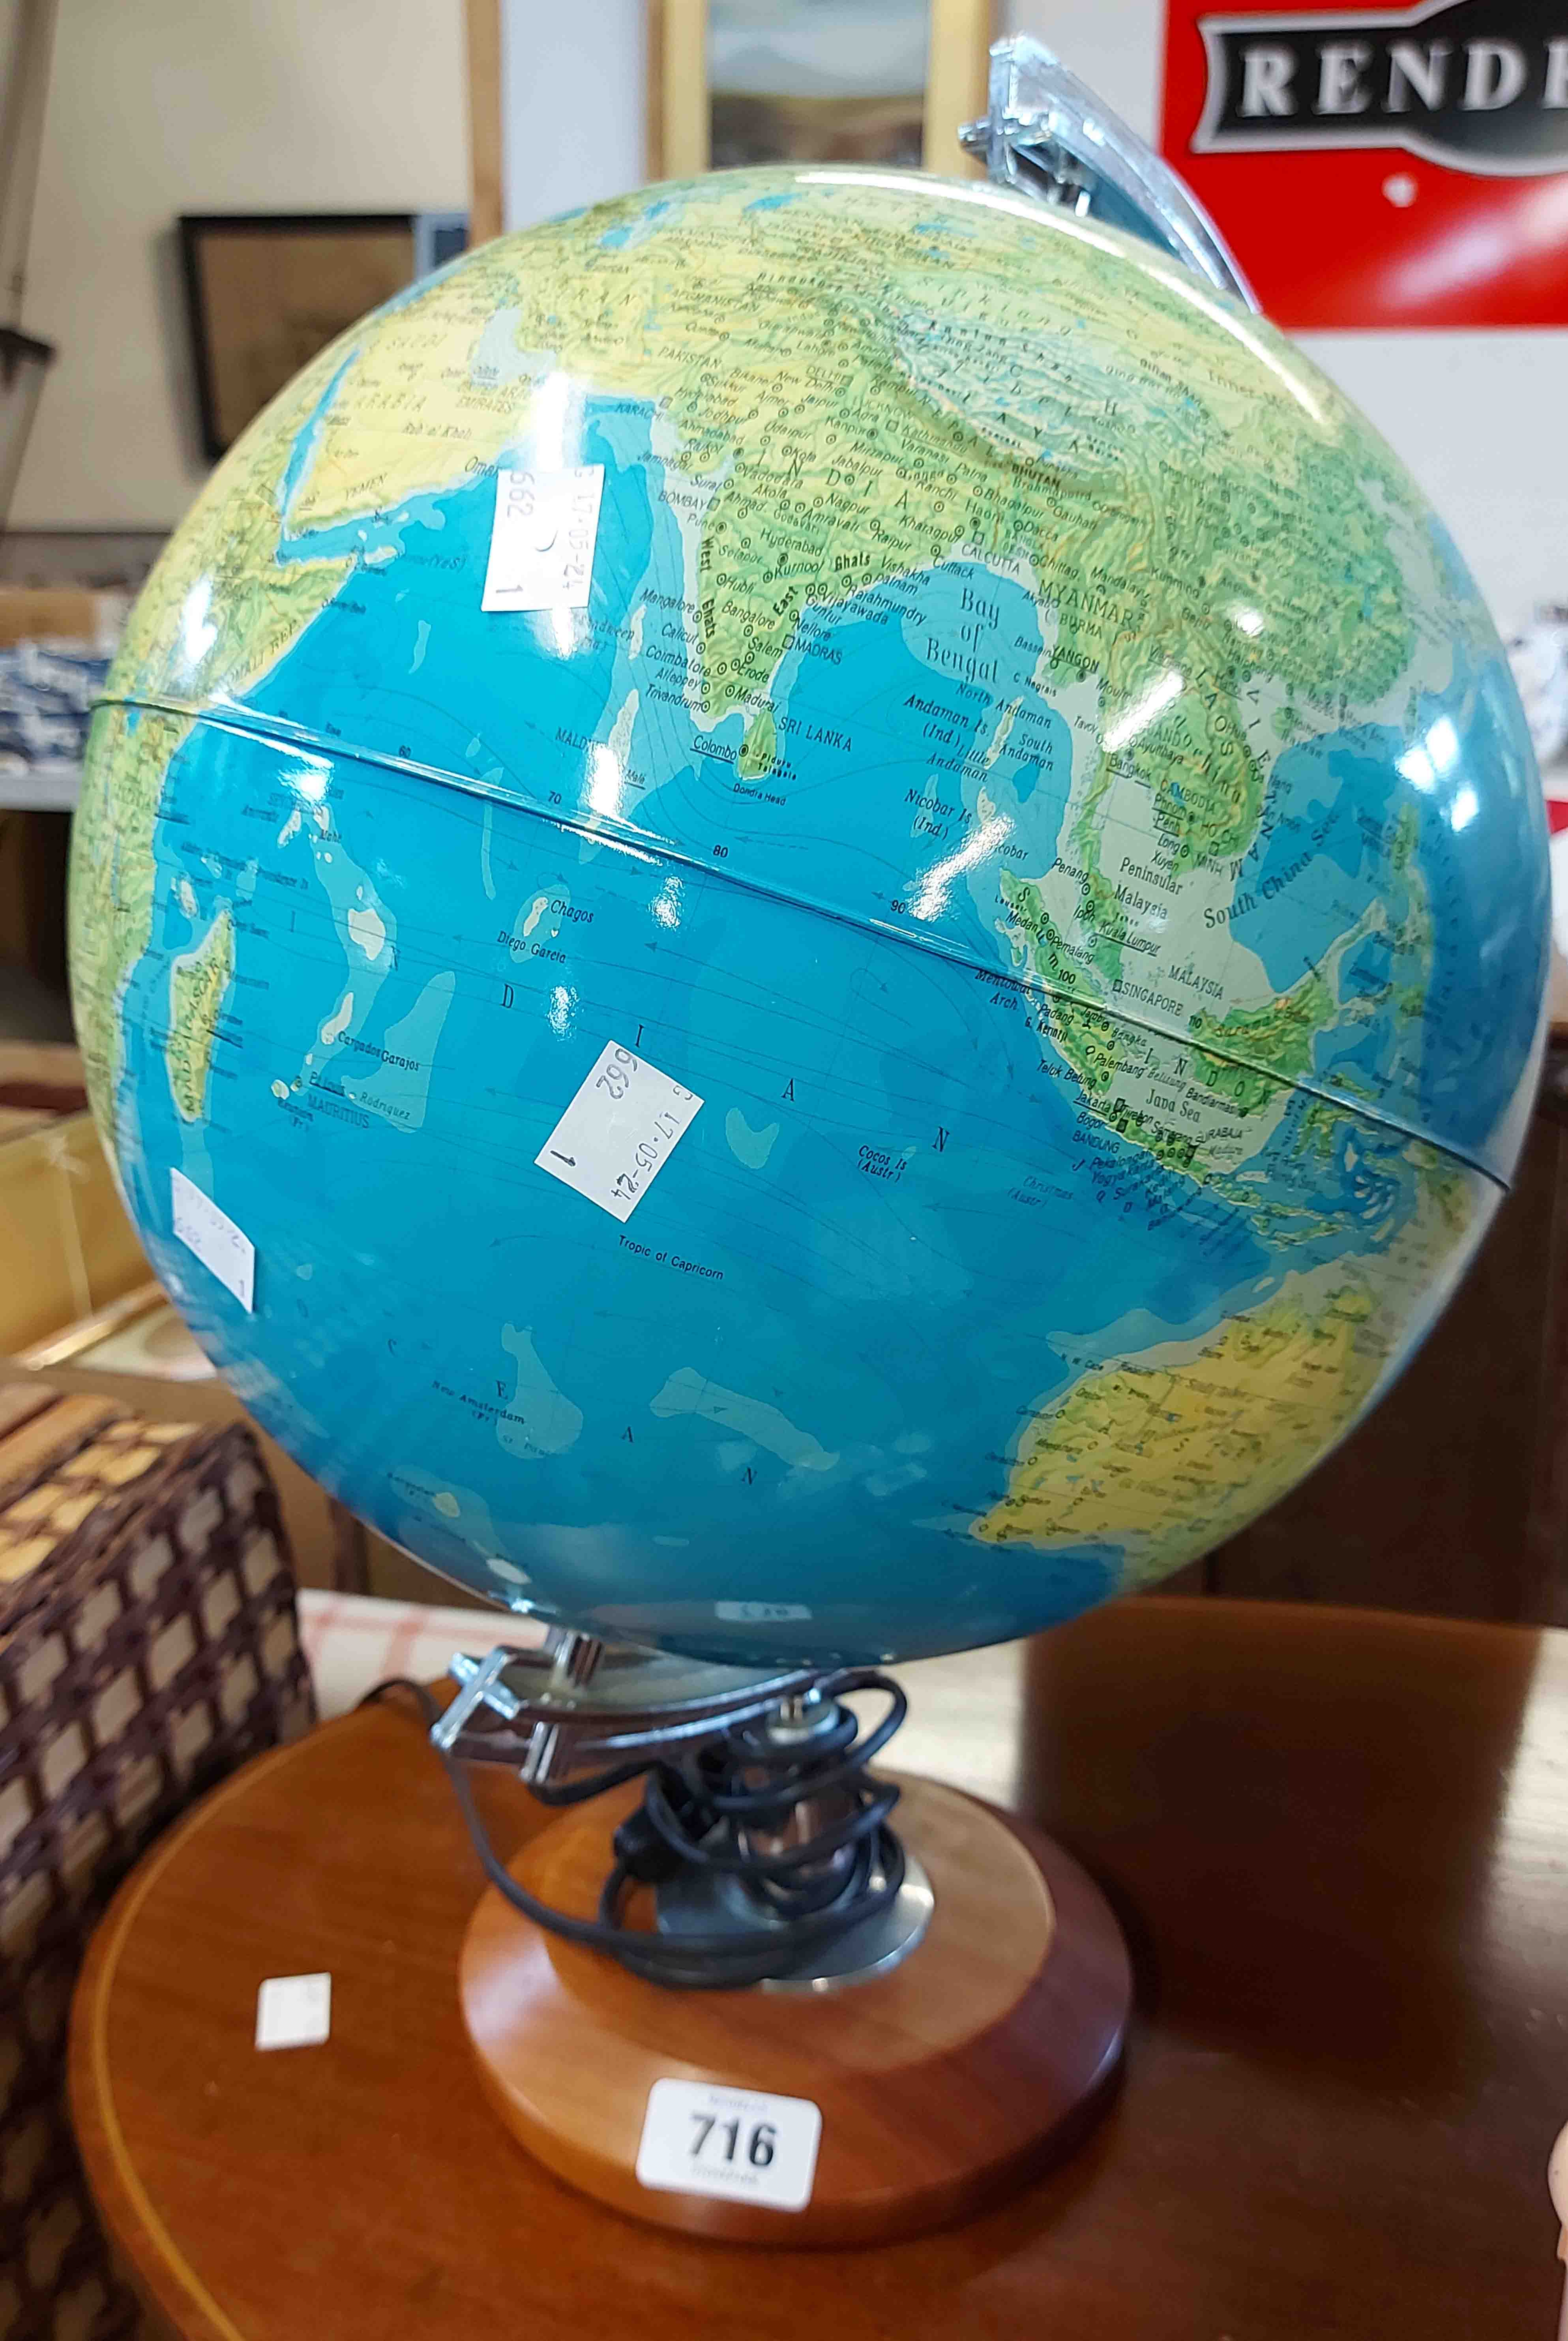 A modern illuminated globe